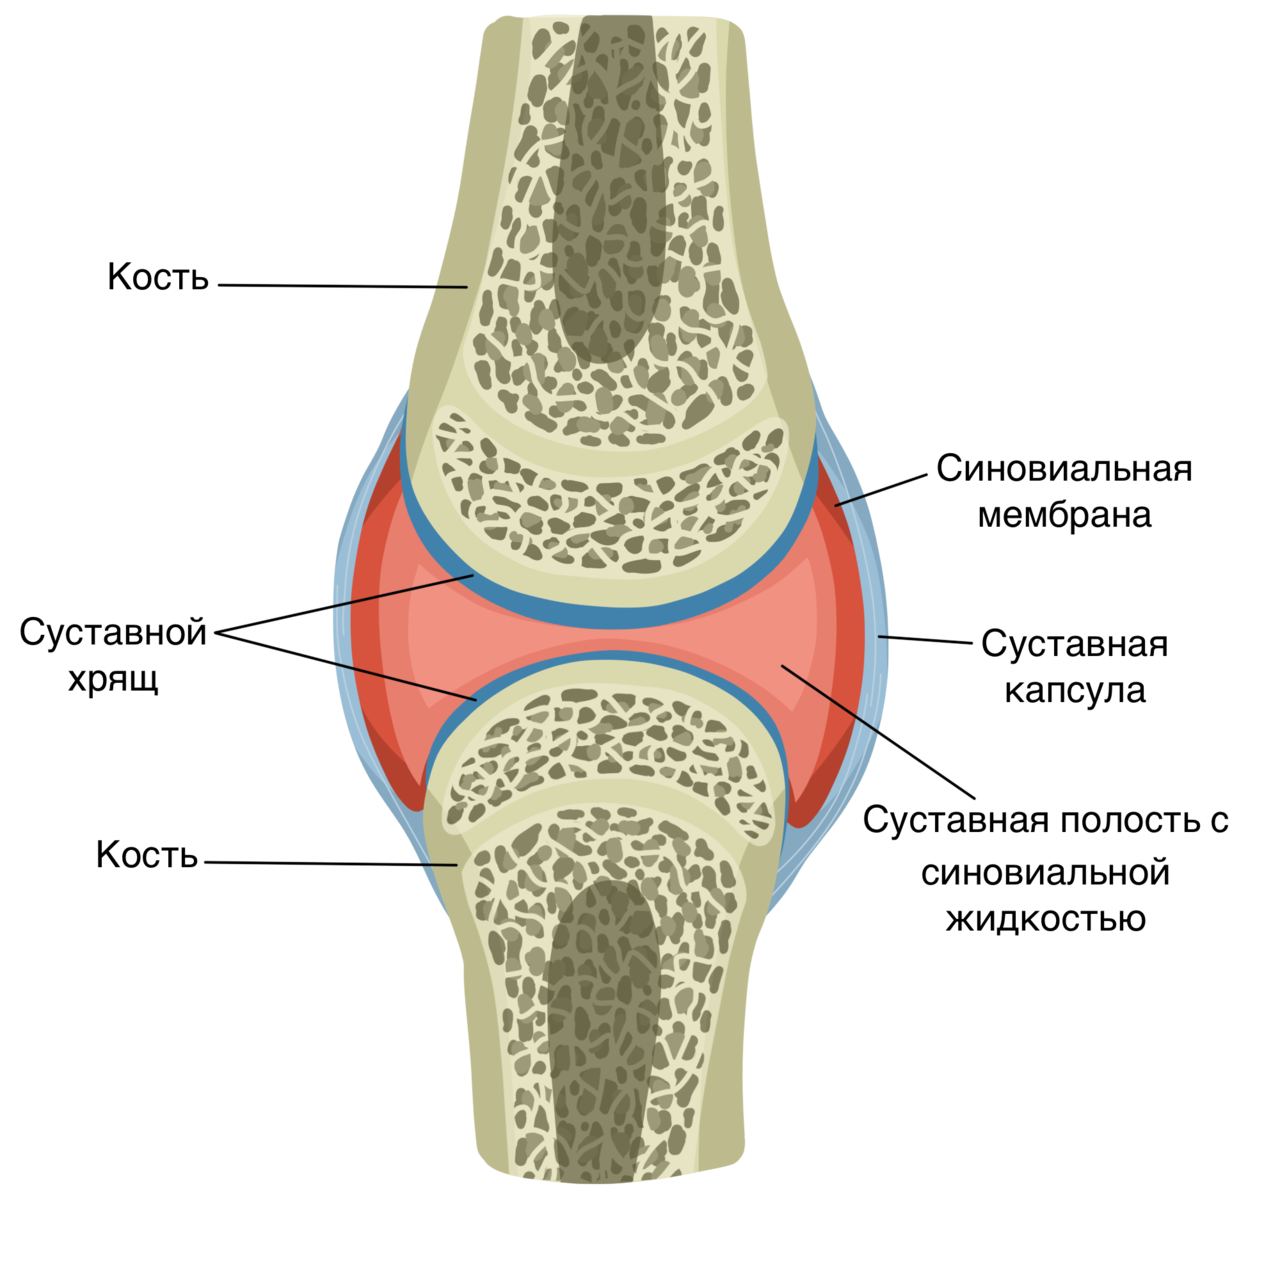 Строение сустава суставной хрящ. Схематическое строение сустава. Строение костей коленного сустава. Синовиальная мембрана суставной капсулы. Функции фиброзной оболочки